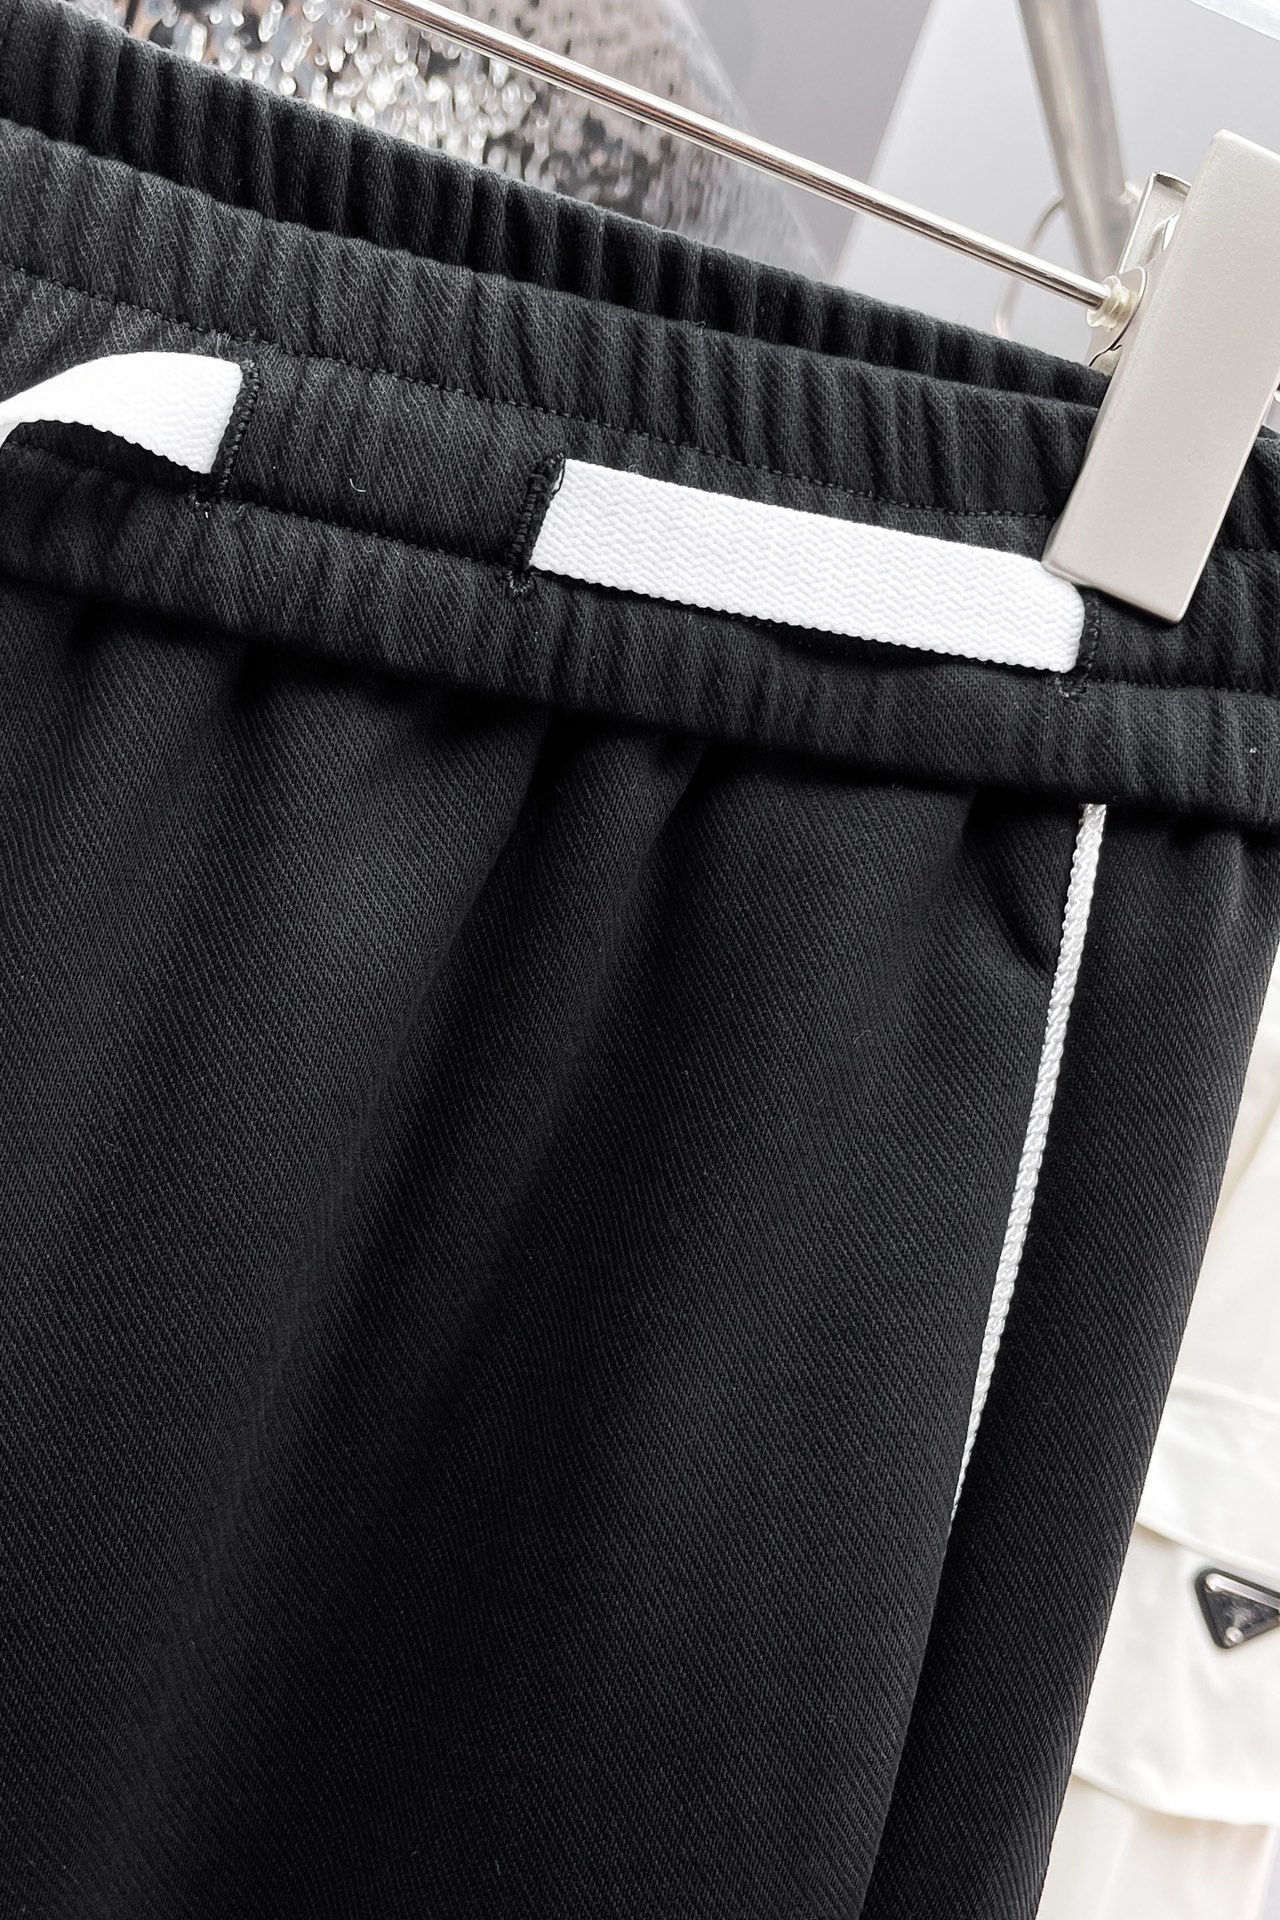 Y32024春季新品休闲裤官网同步发售裤身工艺设计进口客供辅料面料定制代工厂出品免检！每个细节做到极致原